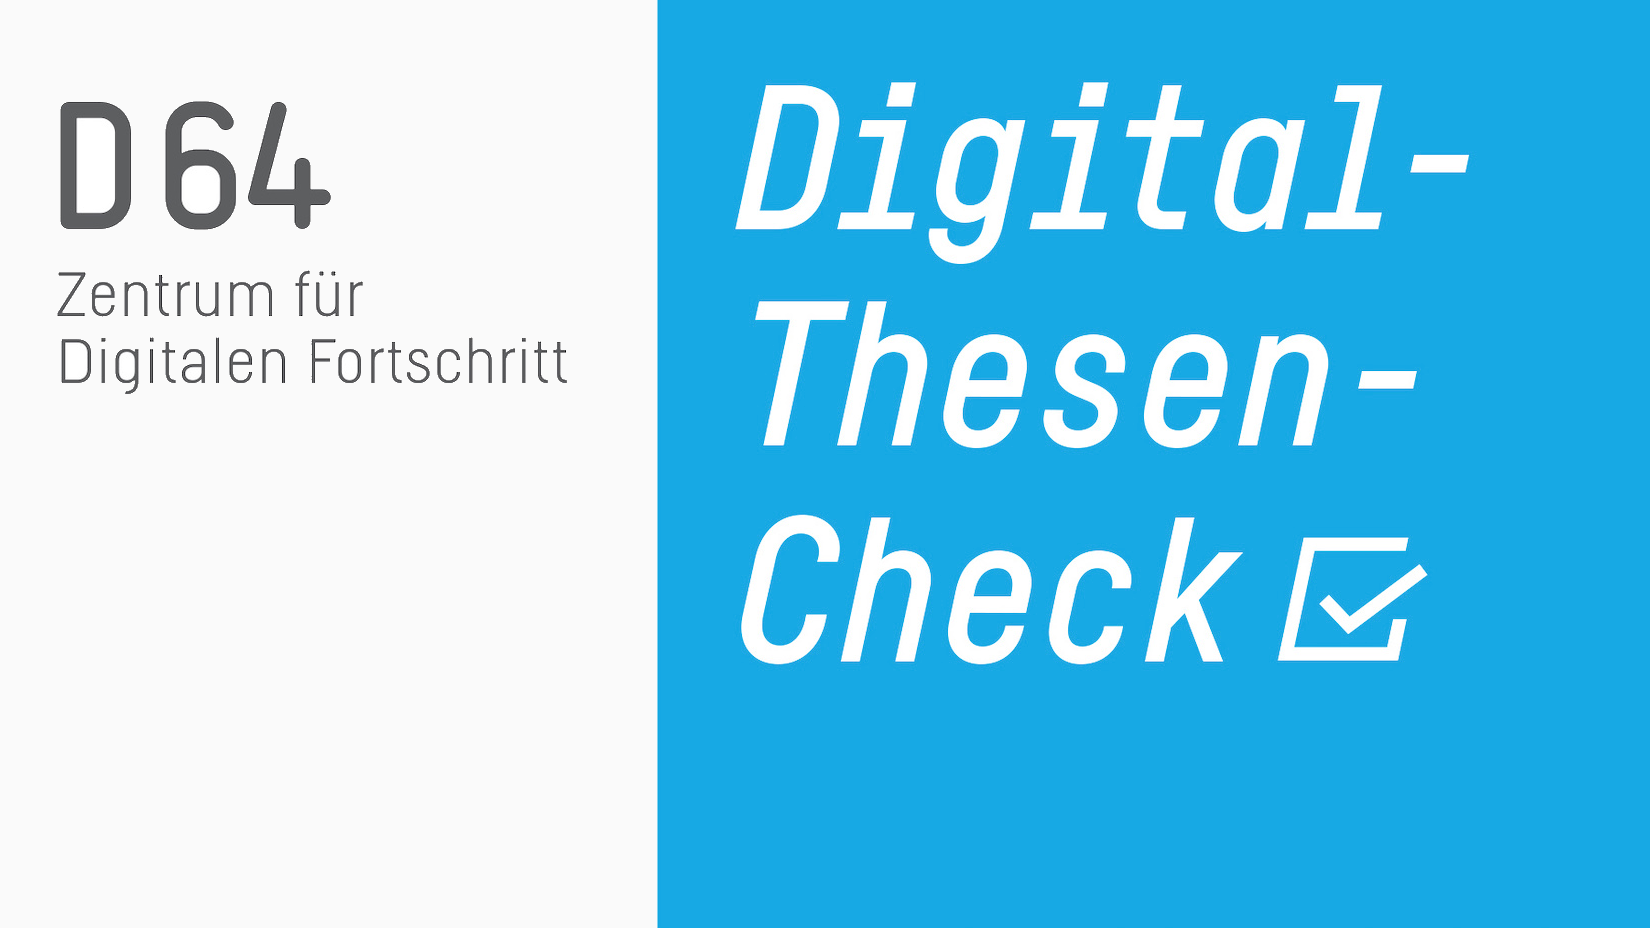 Bild mit Text, links: "D64 Zentrum für Digitalen Fortschritt" und rechts "Digital-Thesen-Check"